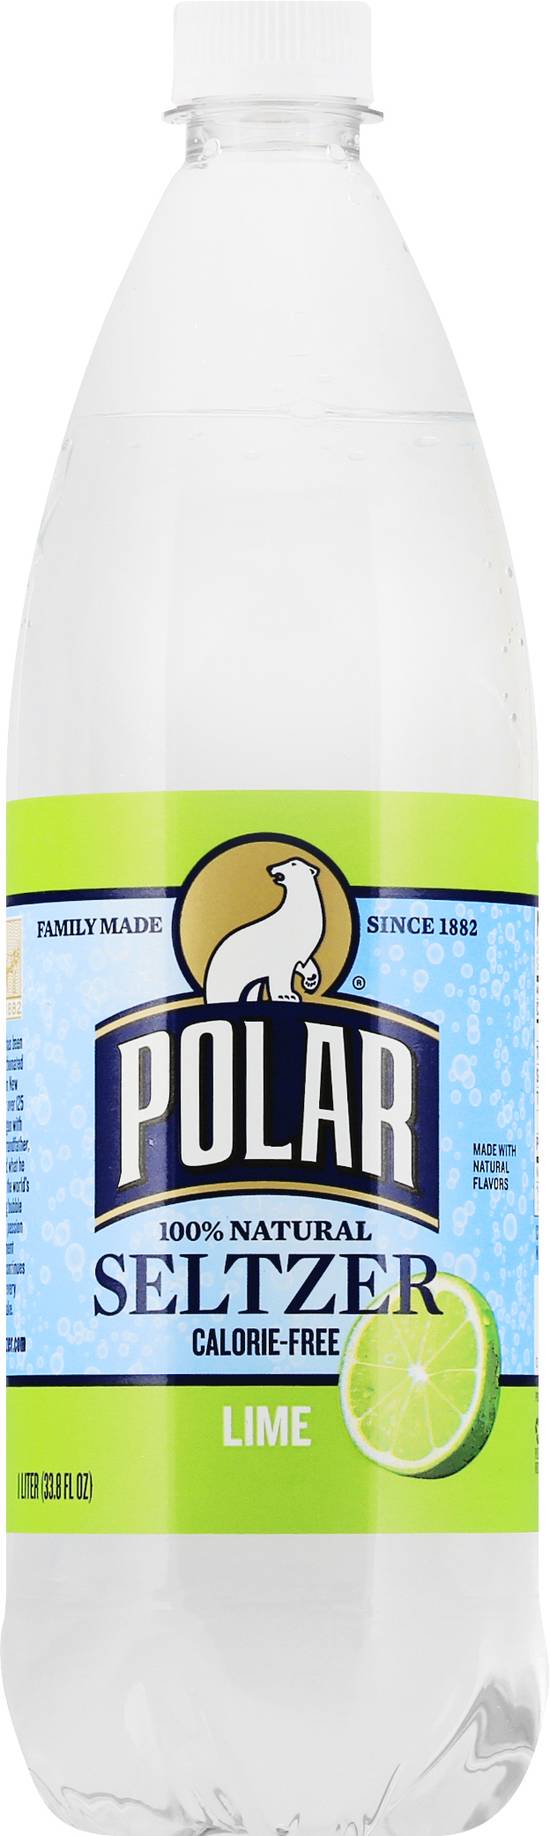 Polar Lime Flavor Seltzer (33.8 fl oz)